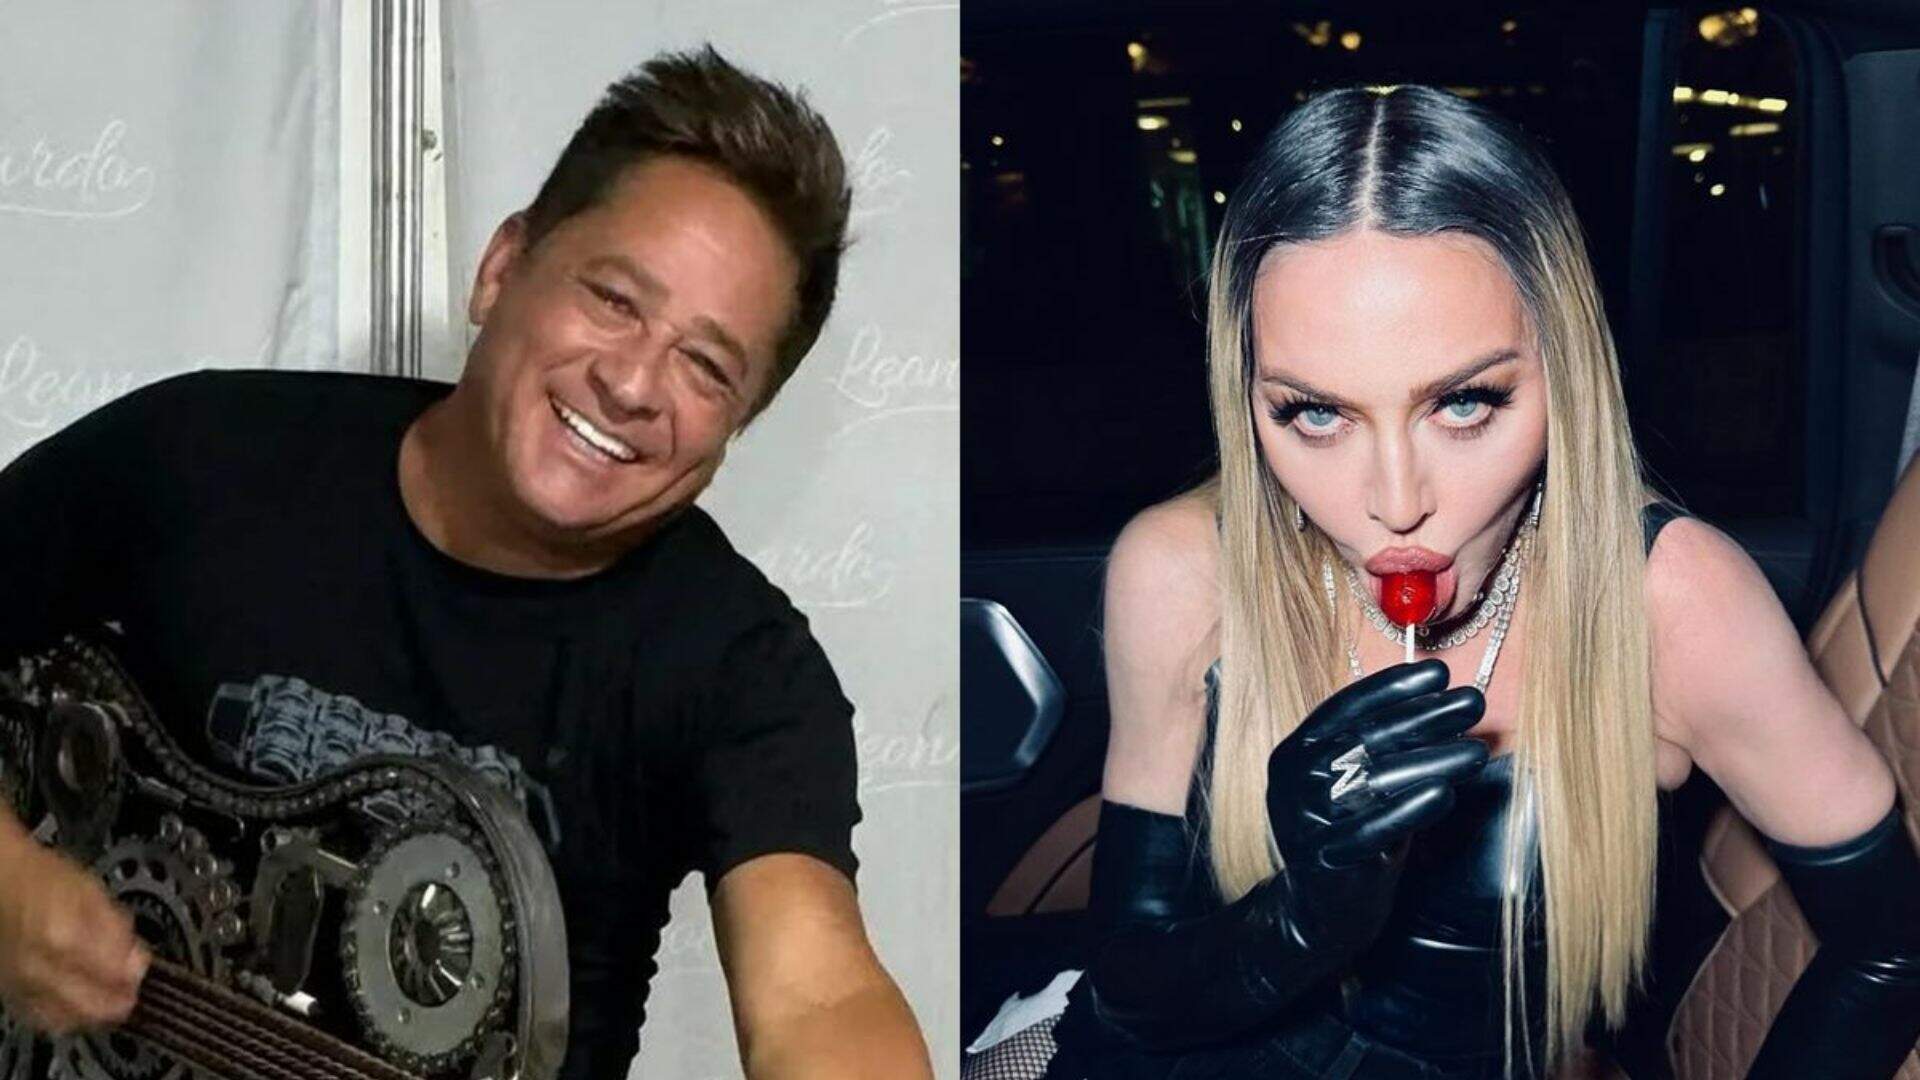 Leonardo solta o verbo sobre show de Madonna no Rio de Janeiro: “Aquilo é s*ruba”